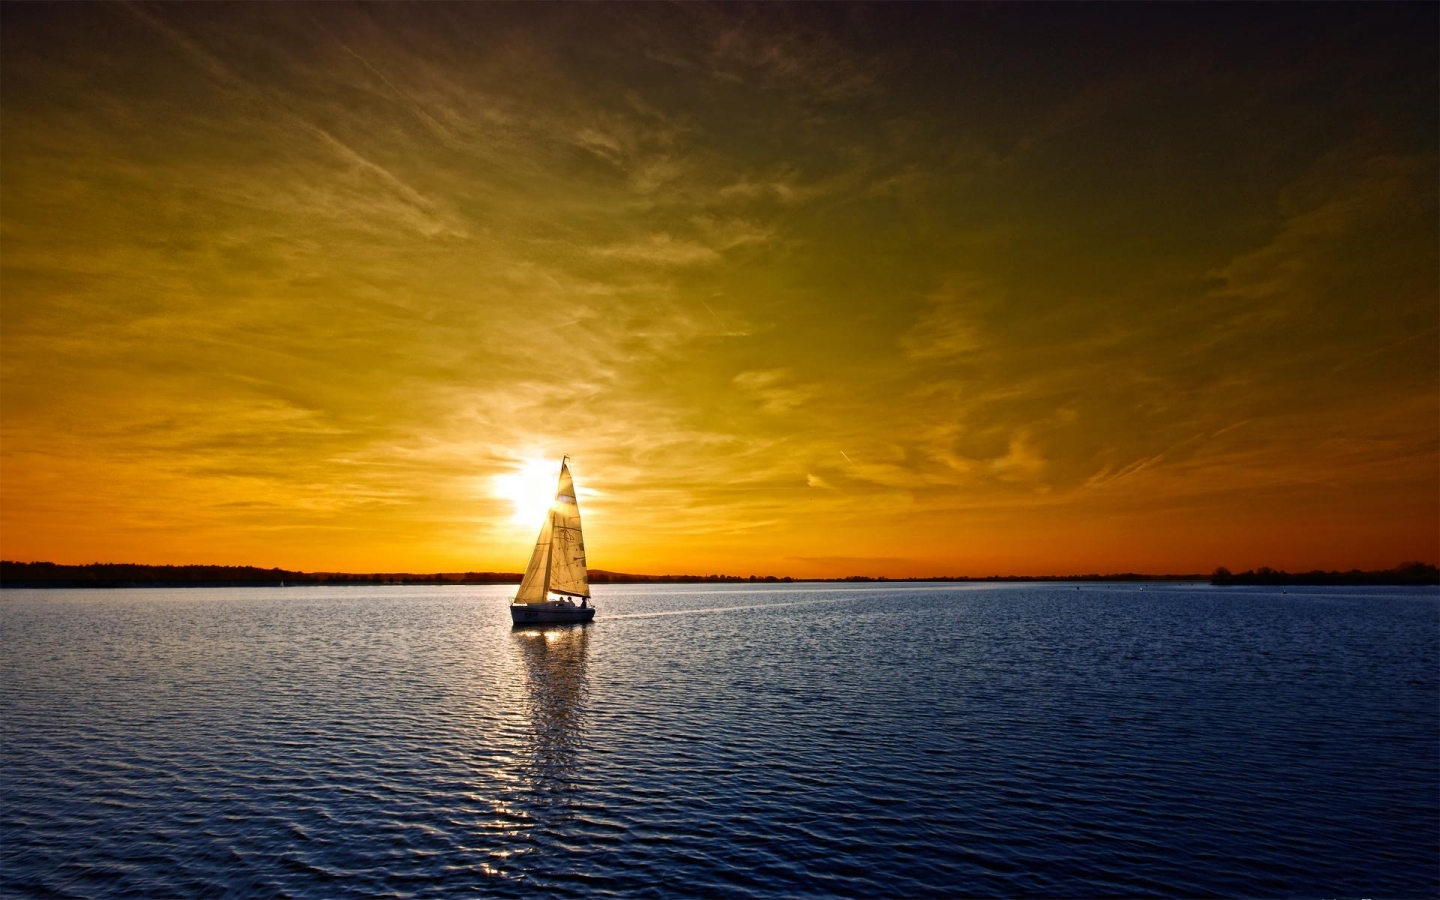 Ocean Sunset for 1440 x 900 widescreen resolution